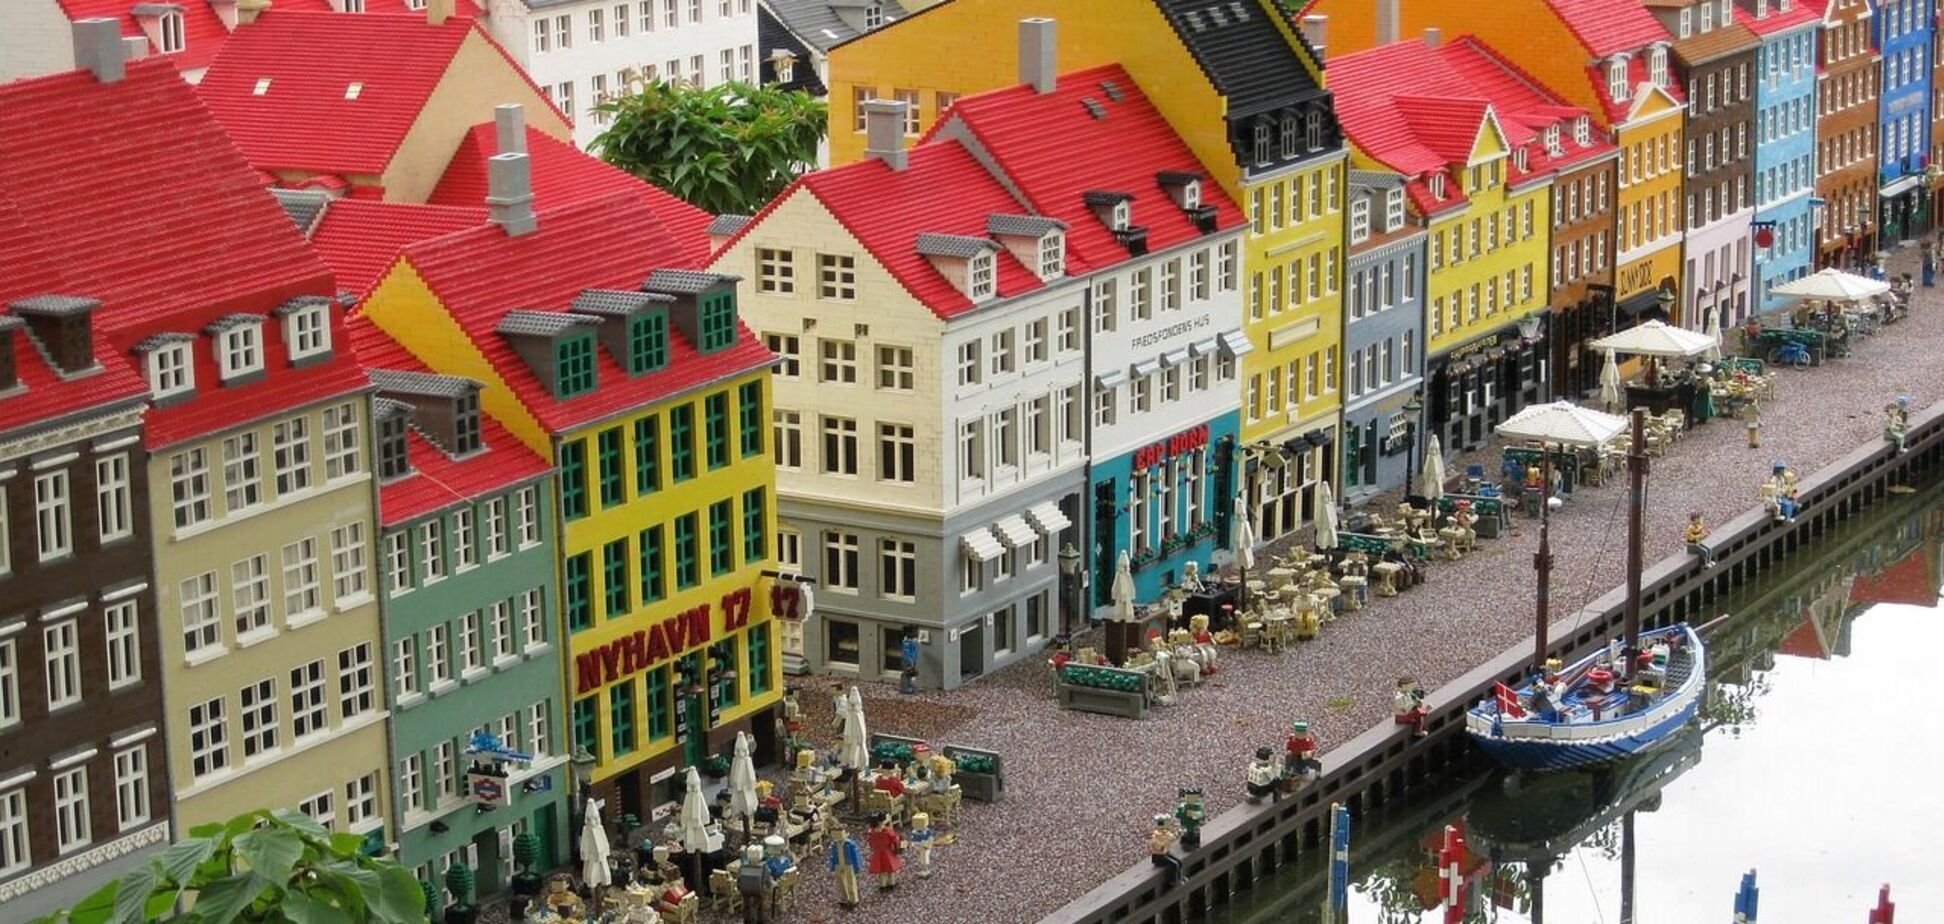 Низькі ціни і менше натовпу: туристам назвали найкращий час для відвідування Копенгагена за чудової погоди